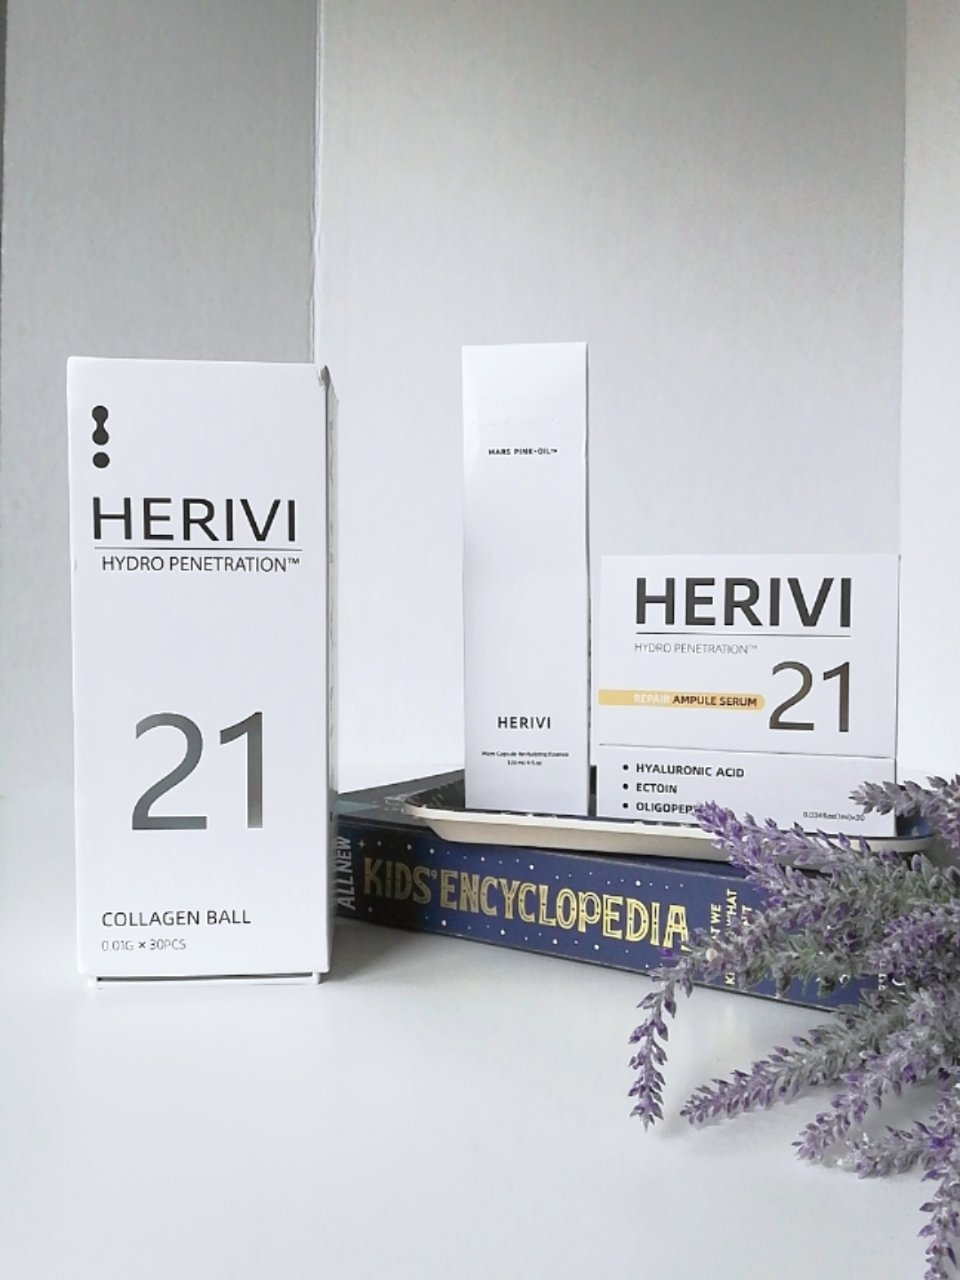 令人耳目一新的黑科技护肤品牌 HERIV...